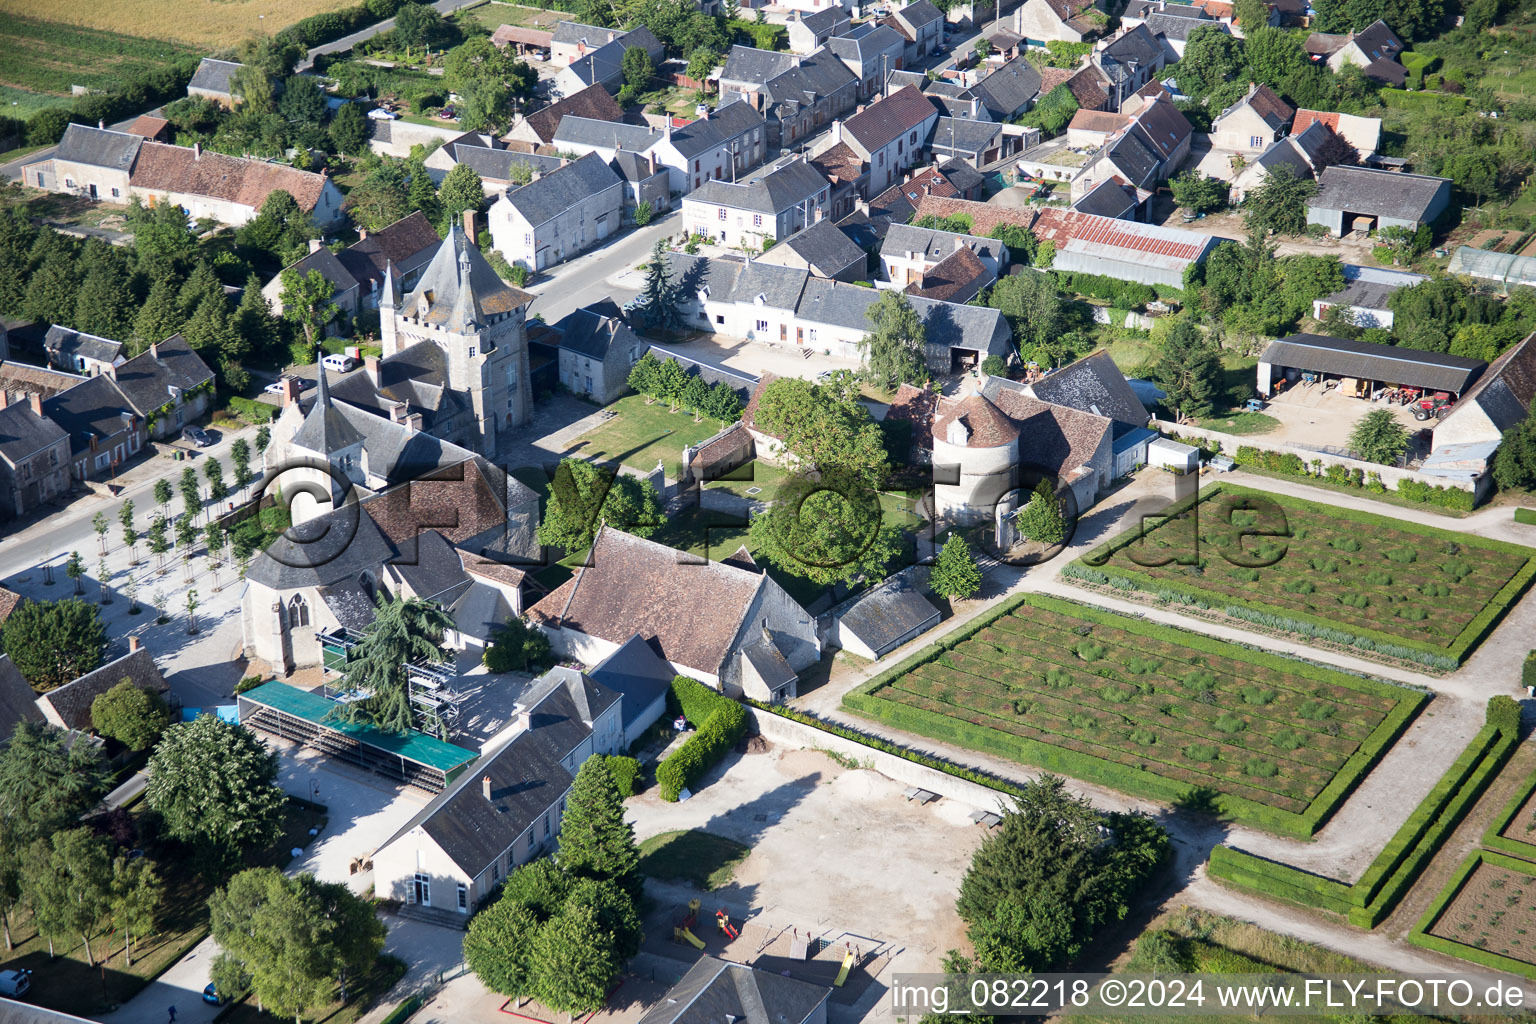 Talcy dans le département Loir et Cher, France vue d'en haut